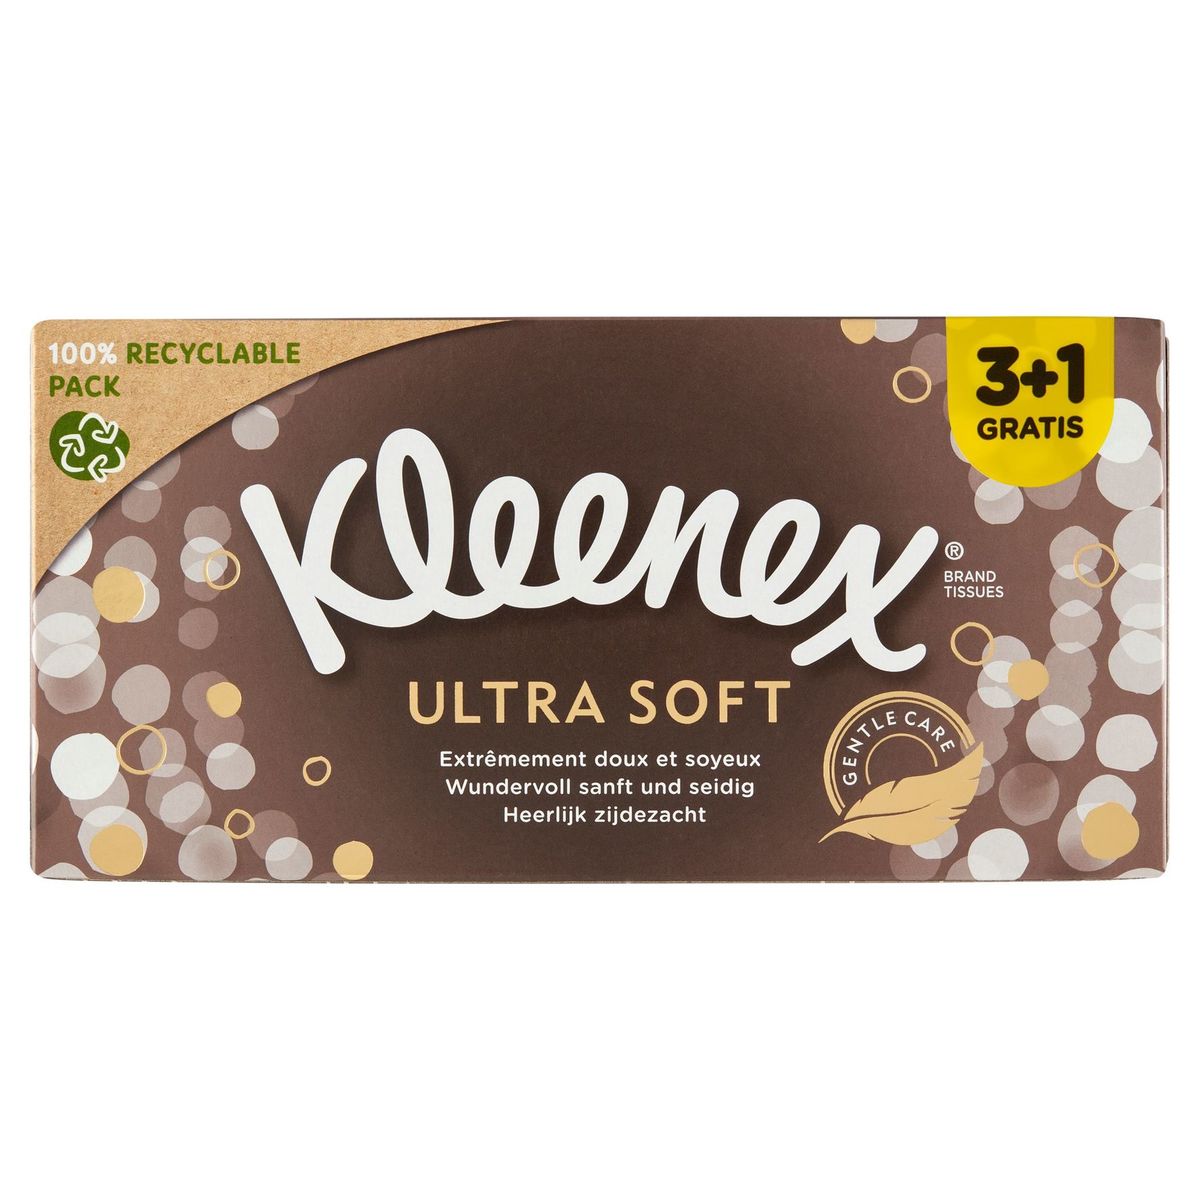 Kleenex Ultra Soft 3-Épaisseurs 3+1 Gratis 4 x 64 Pièces